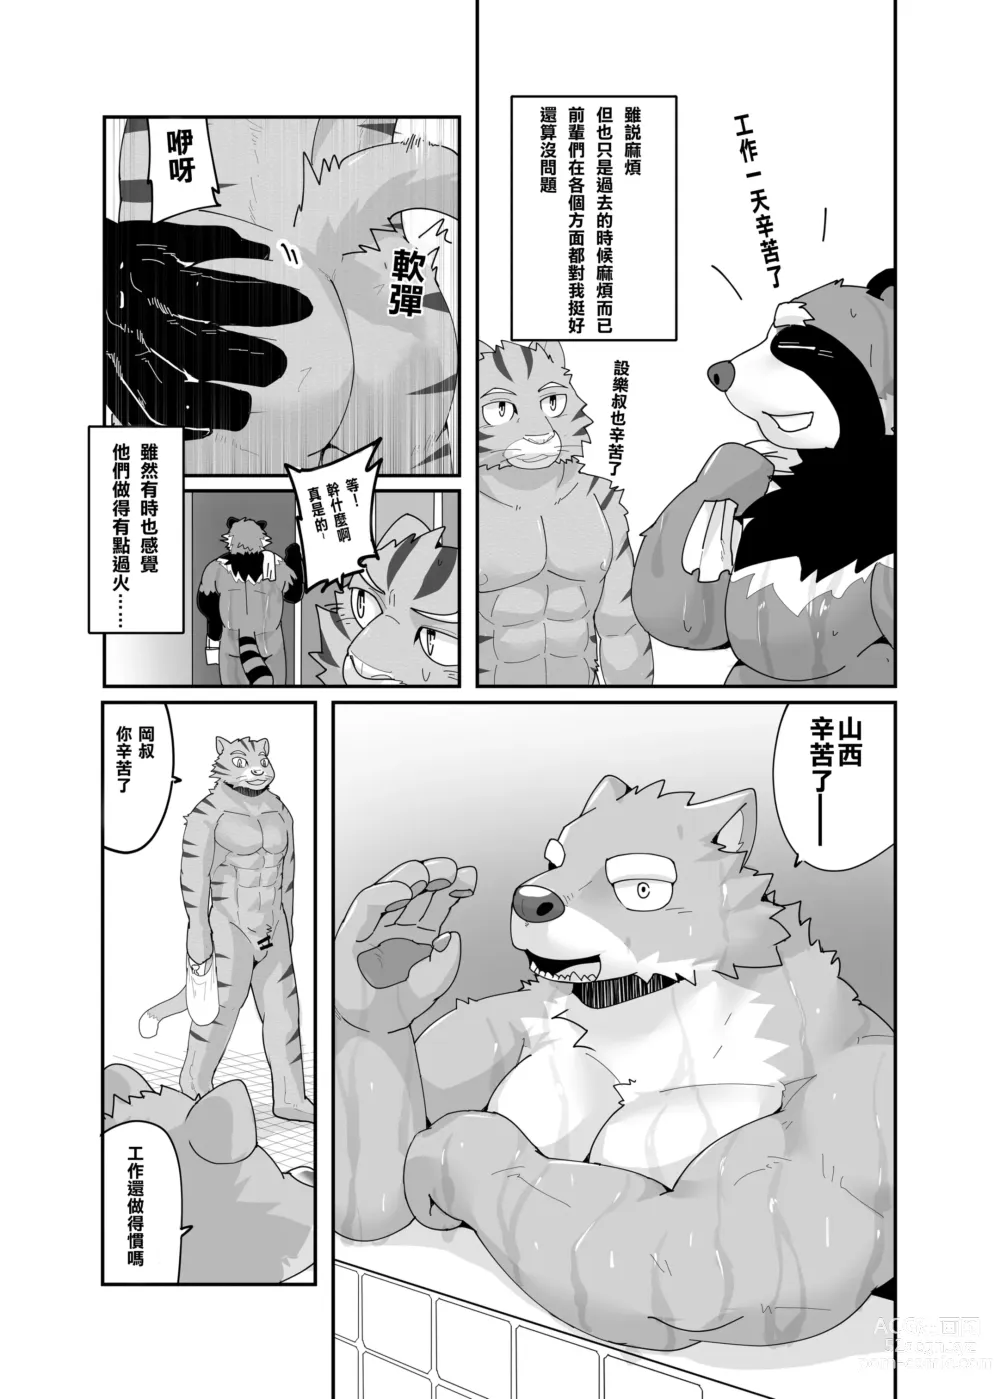 Page 7 of doujinshi 老式單身公寓中有位統御雄性們的主